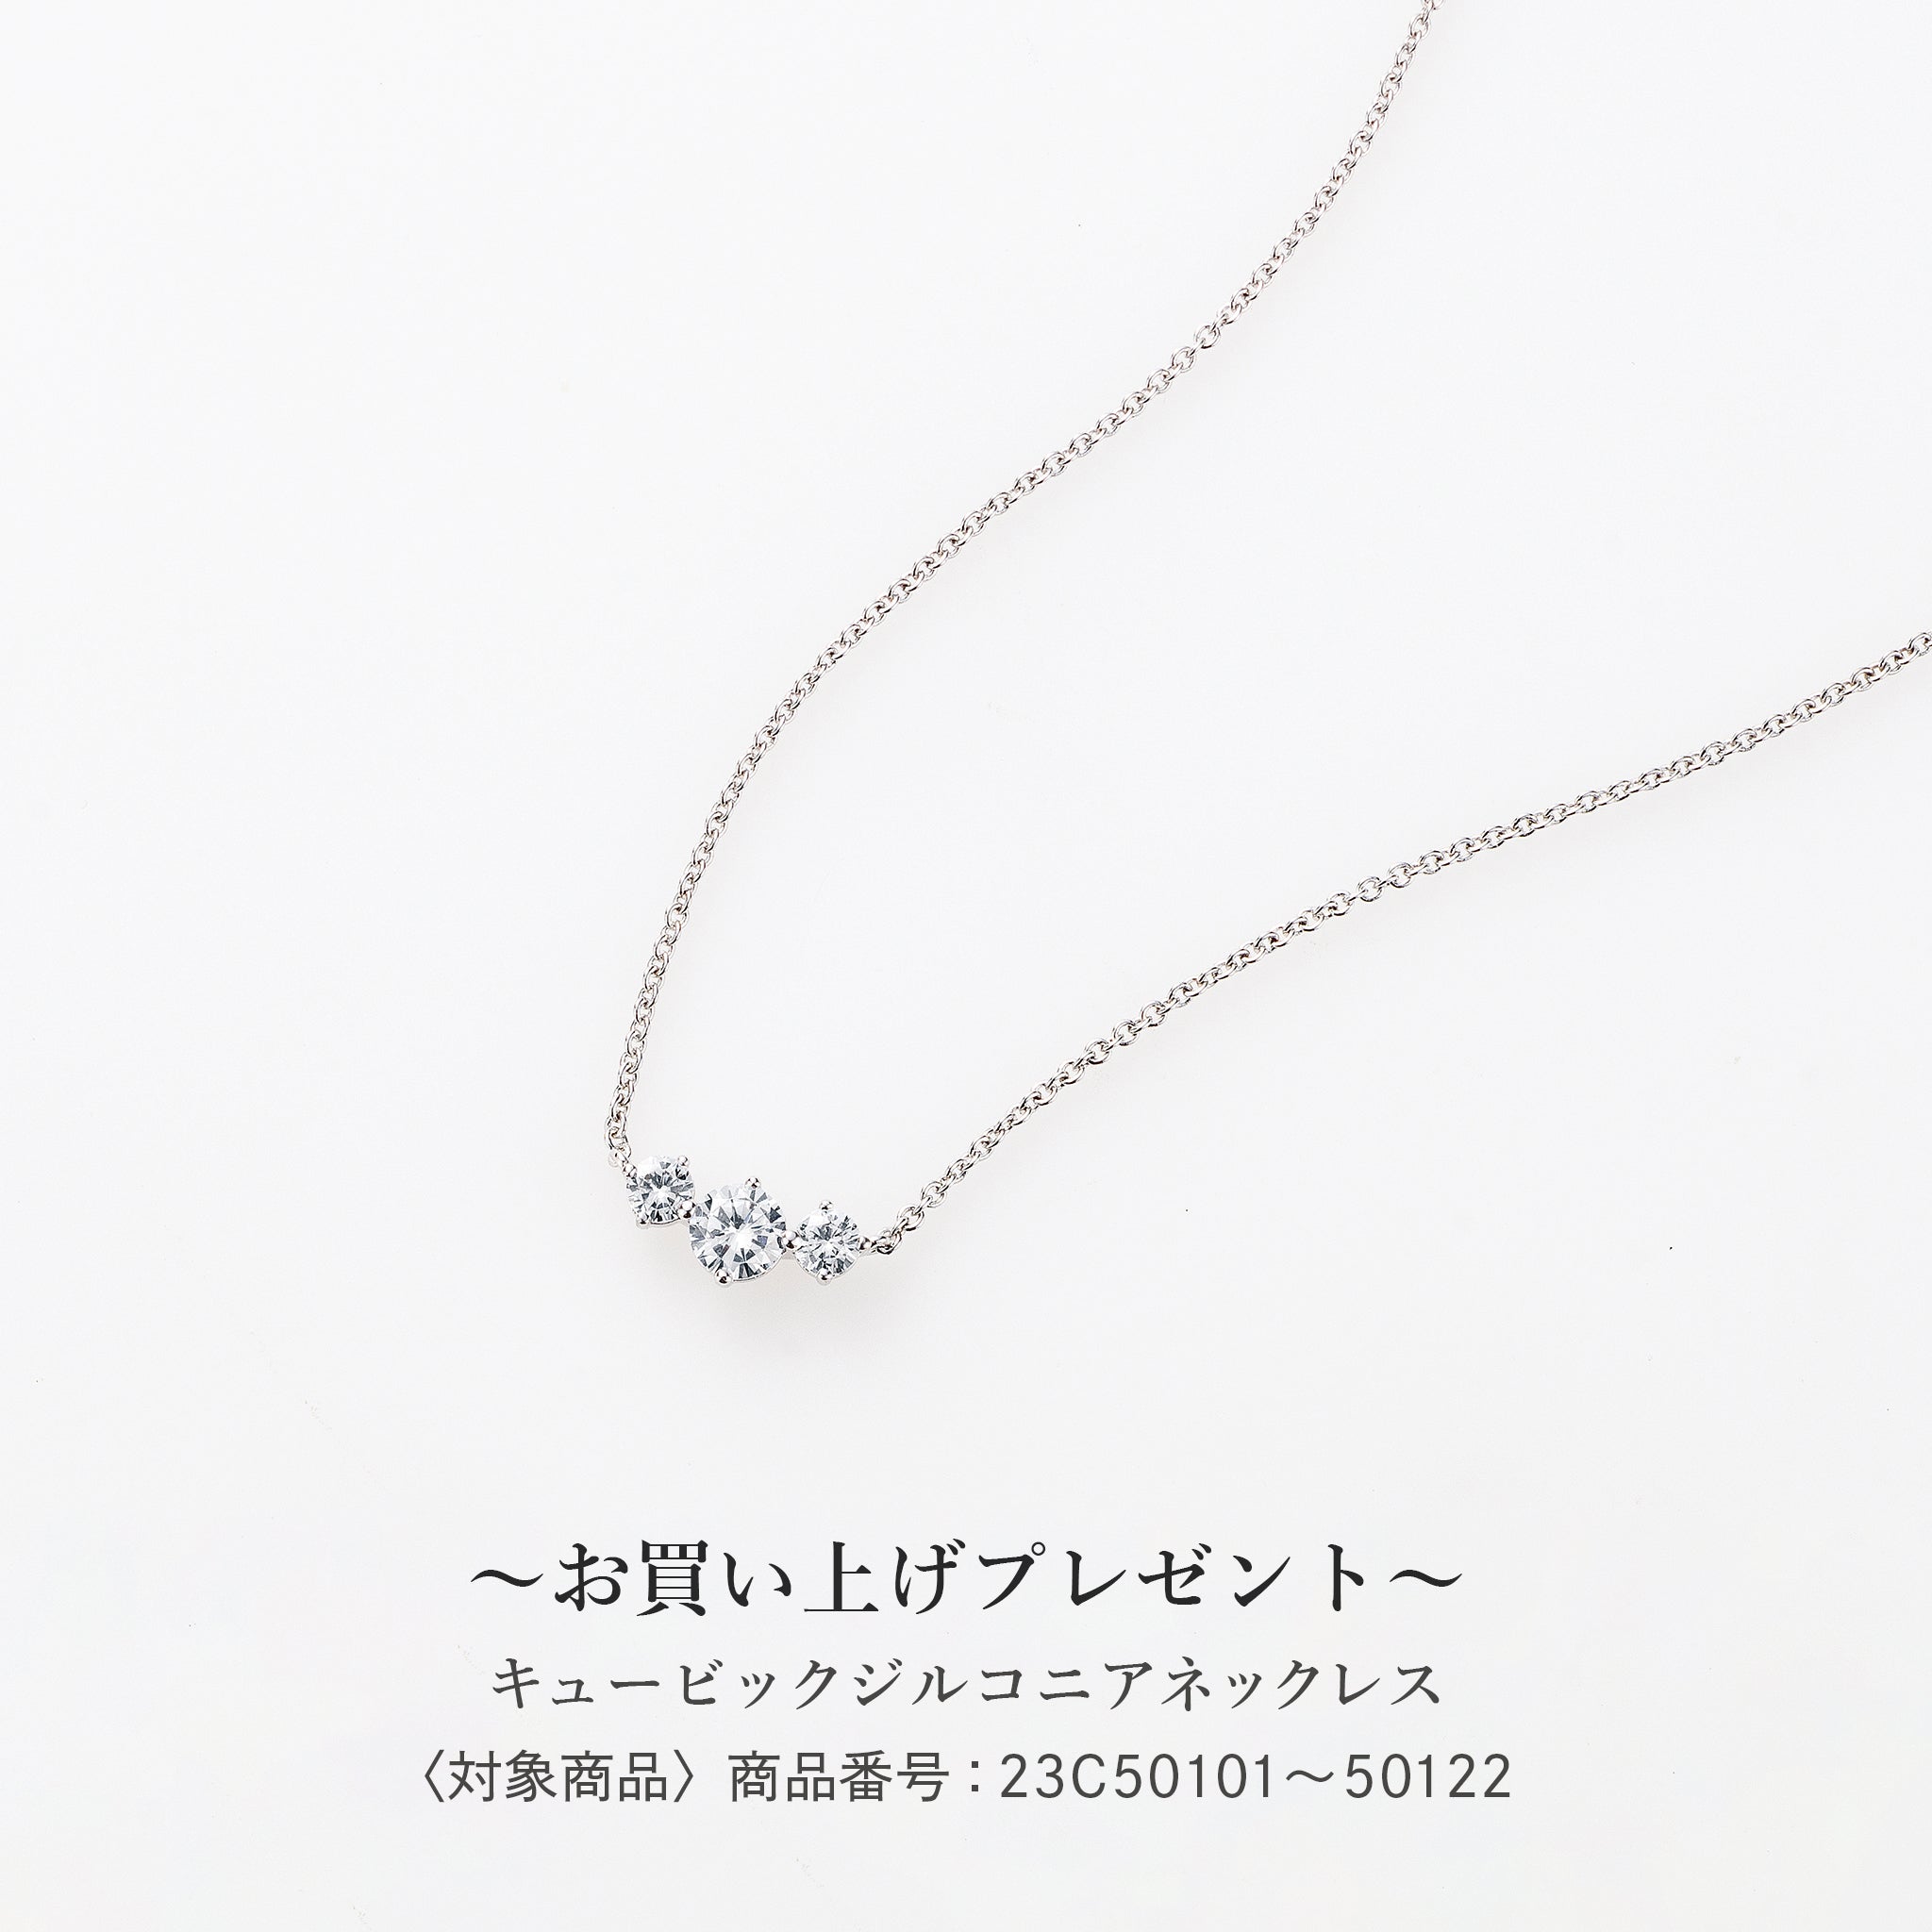 【新品】PT ダイヤモンド ネックレス 0.220CT D SI1 Good